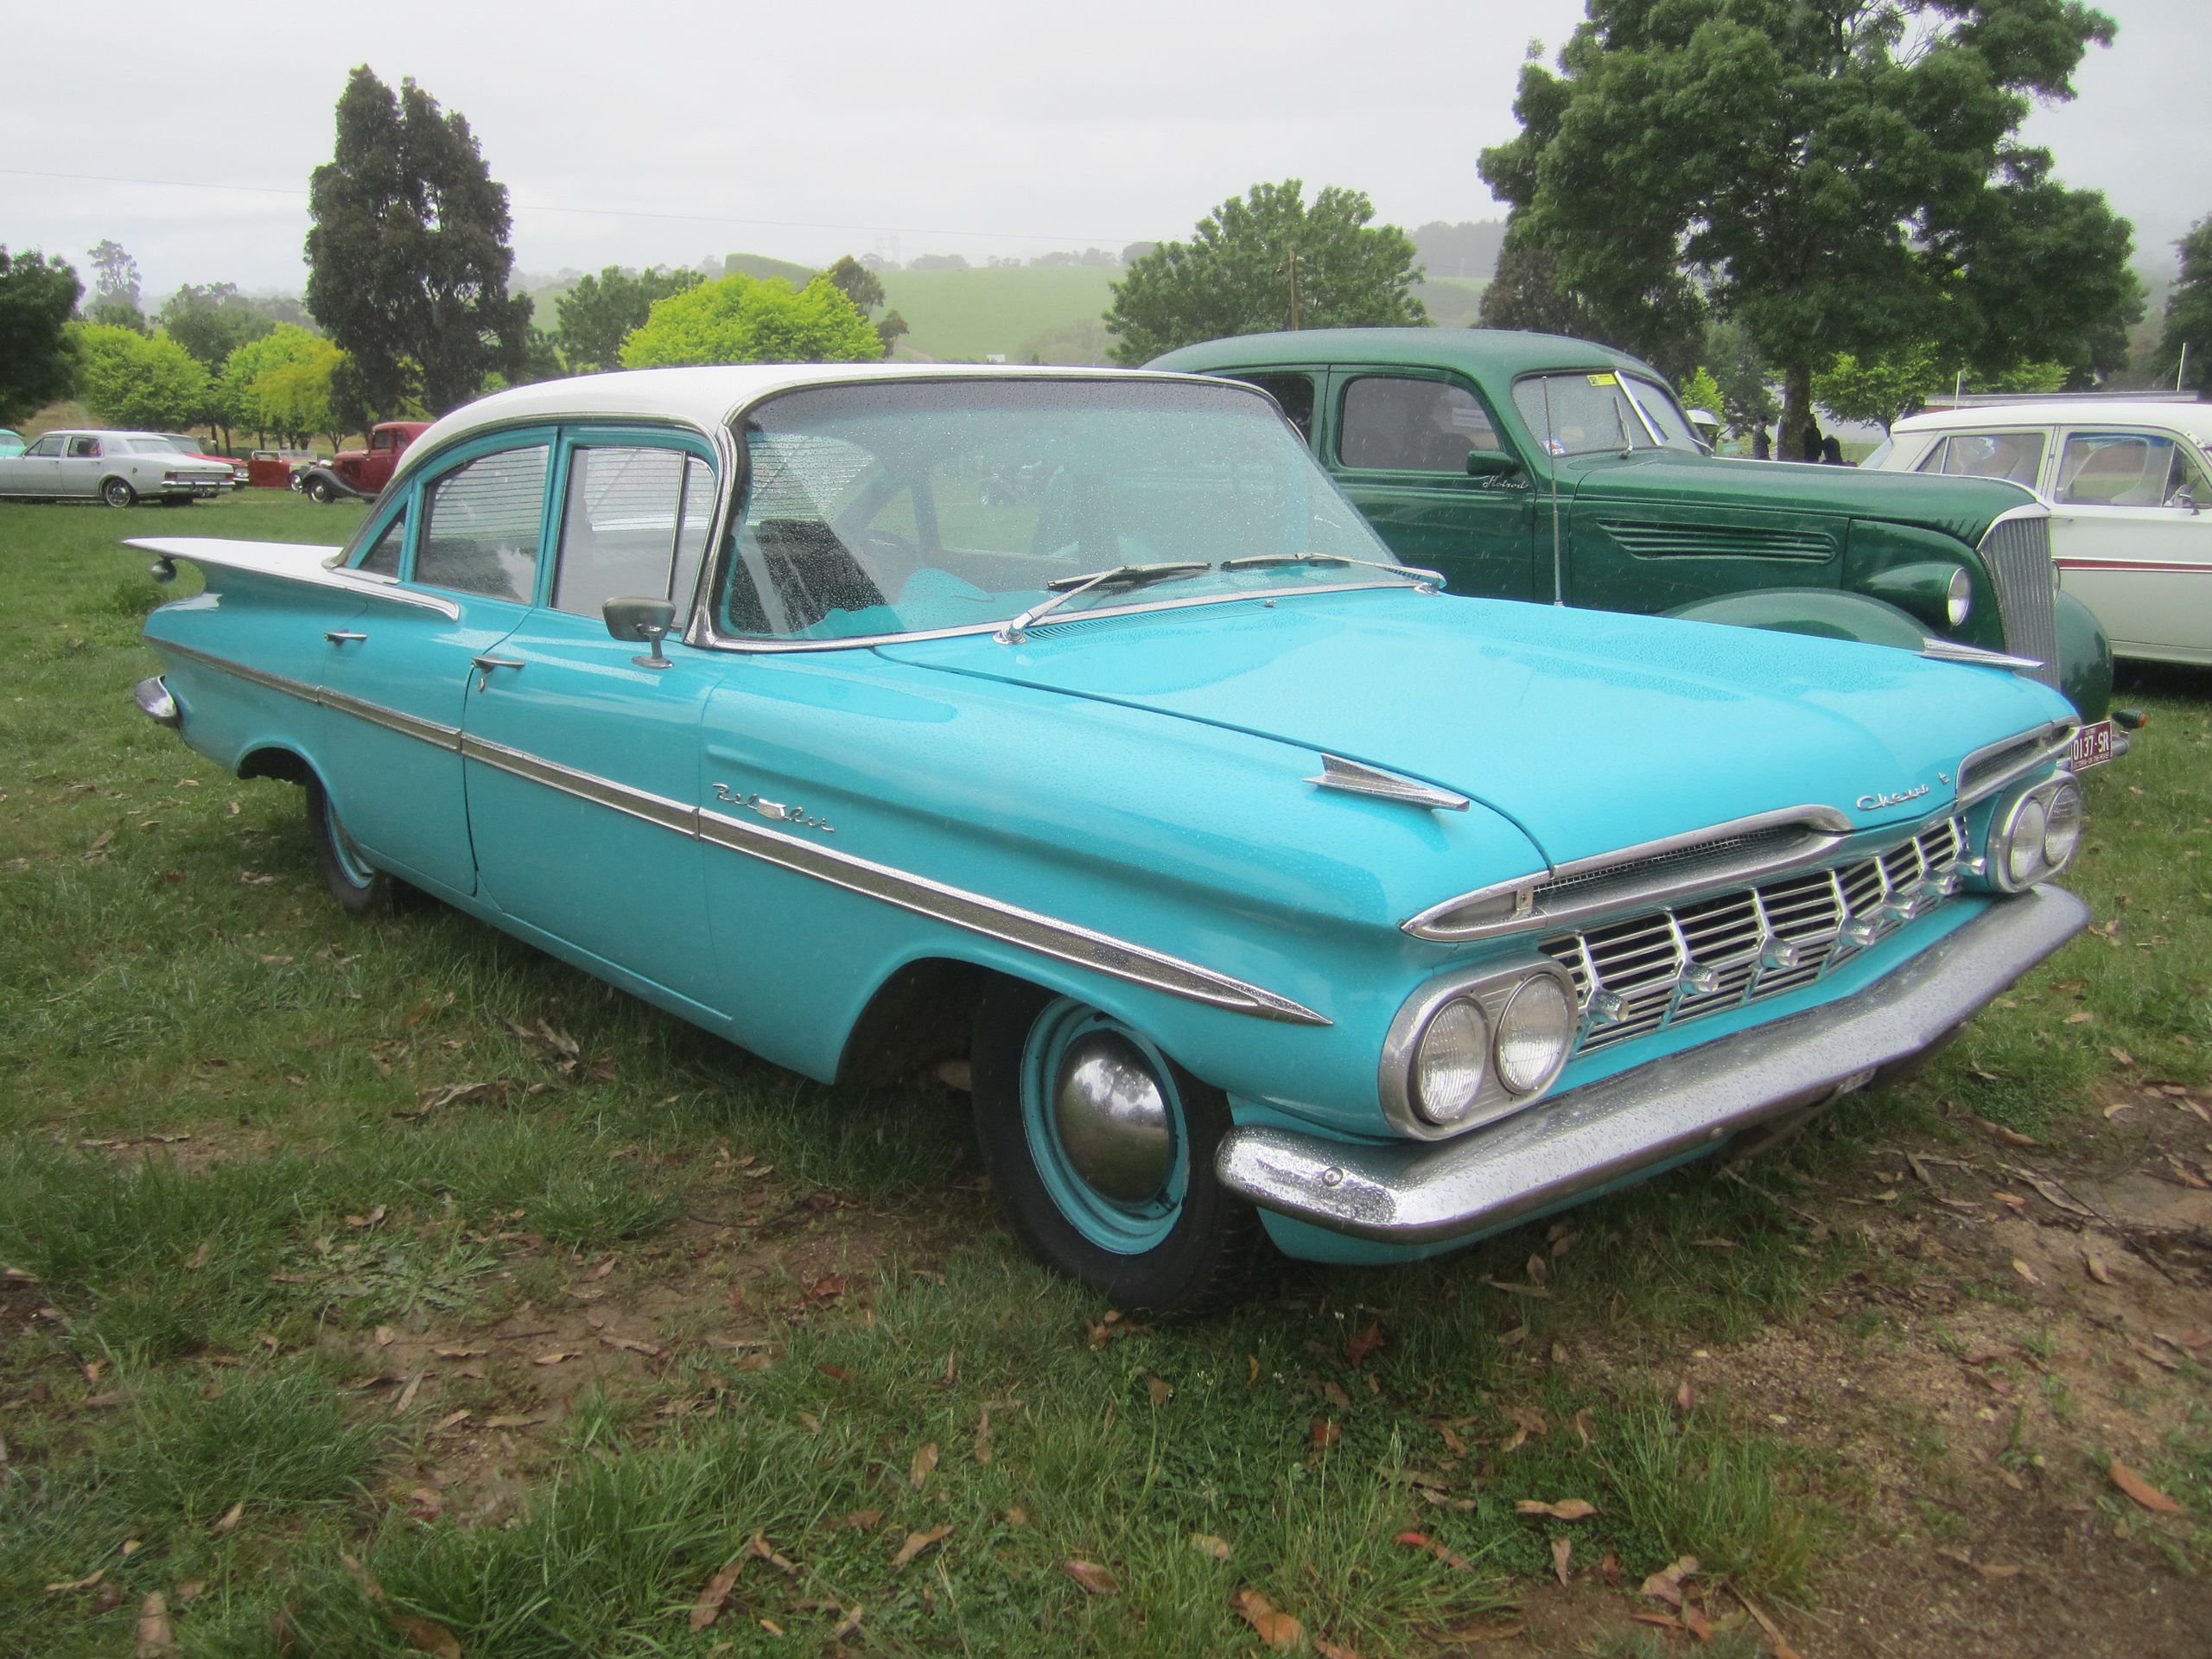 File:1959 Chevrolet Belair Sedan.jpg - Wikimedia Commons